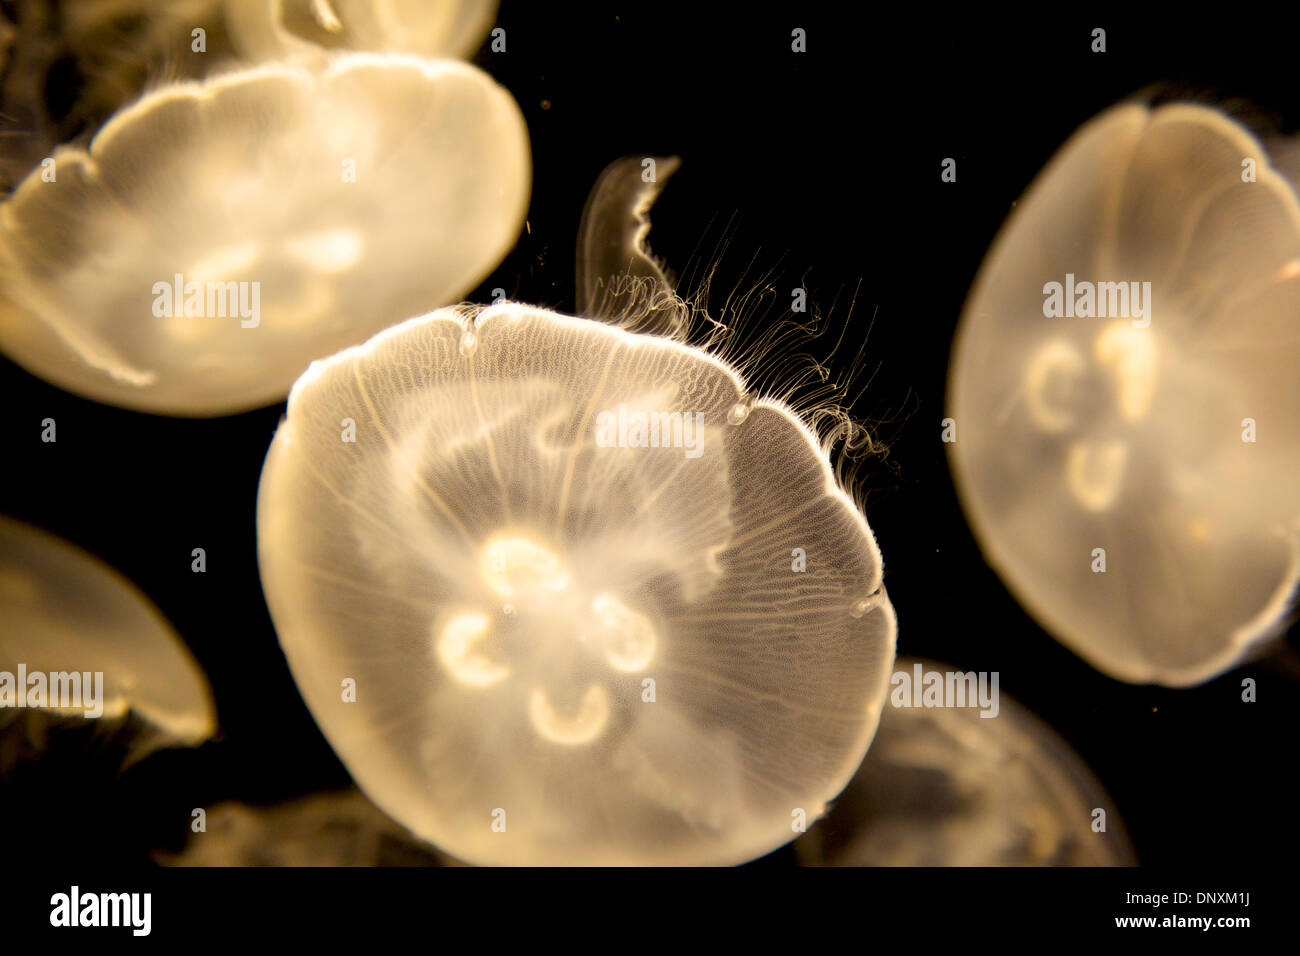 Jellies at long beach aquarium Stock Photo